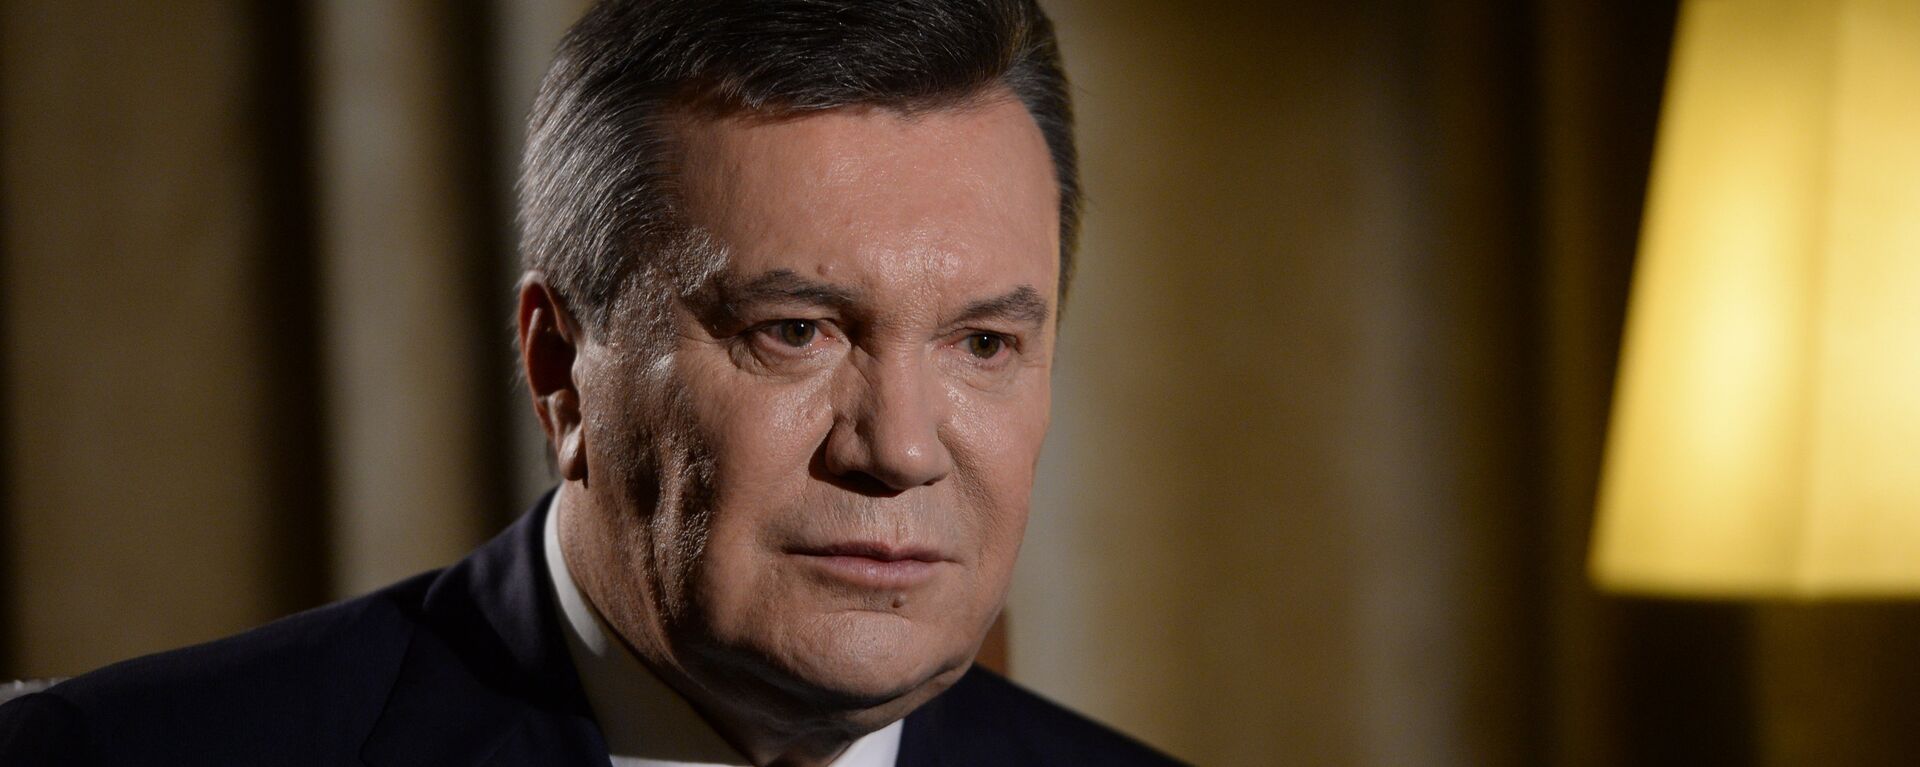 Бывший президент Украины Виктор Янукович, архивное фото - Sputnik Таджикистан, 1920, 17.08.2021